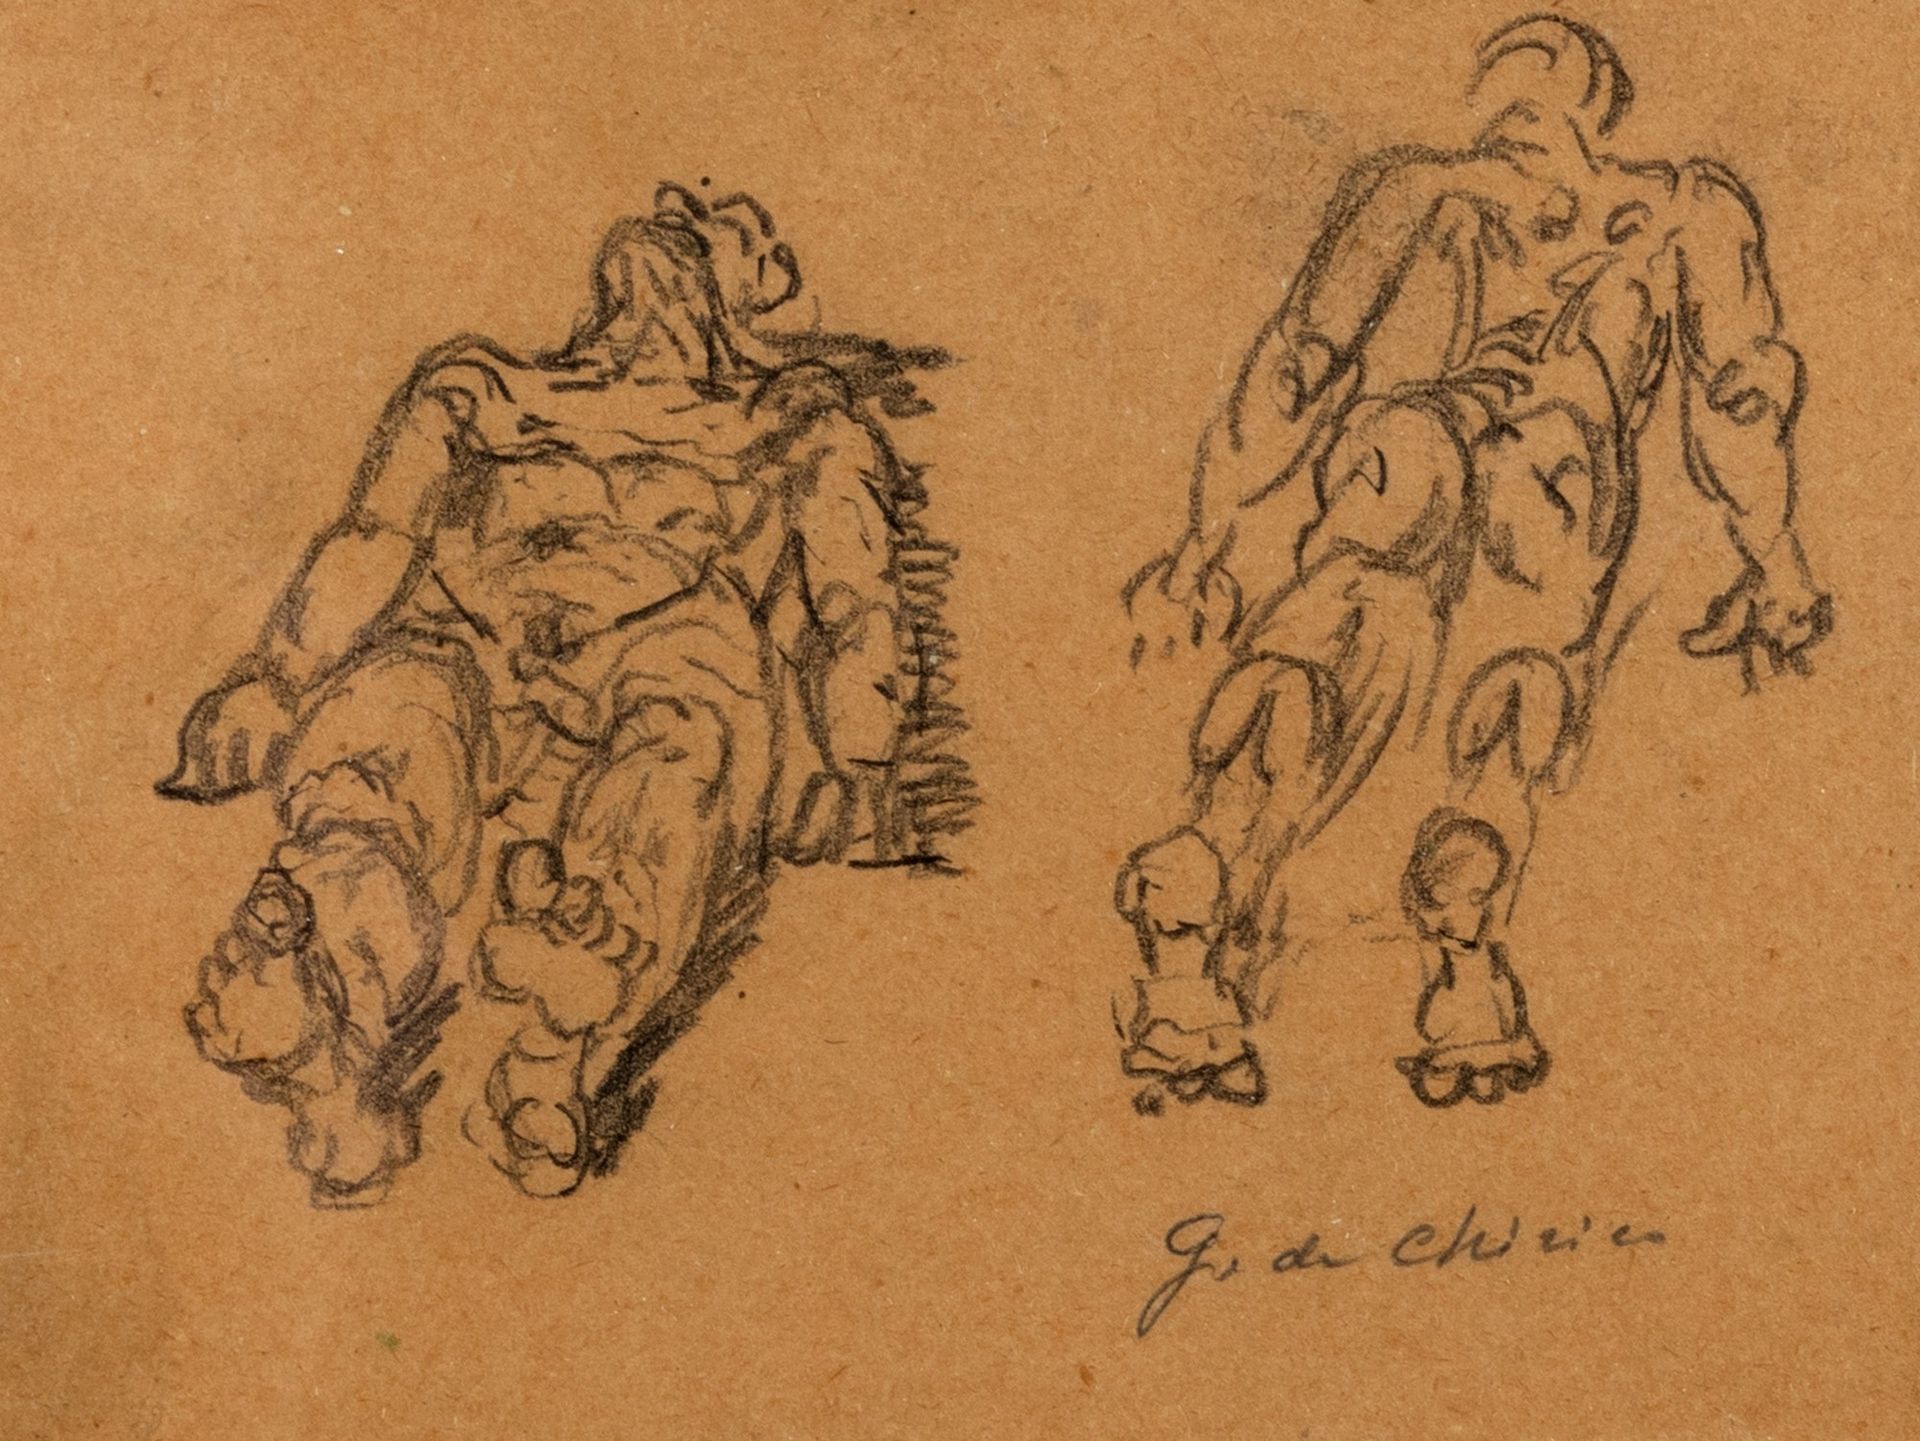 GIORGIO DE CHIRICO 人物研究，1946年

纸上铅笔
11 x 14.4 cm
右下方签名：G. De Chirico

LITERATURE&hellip;